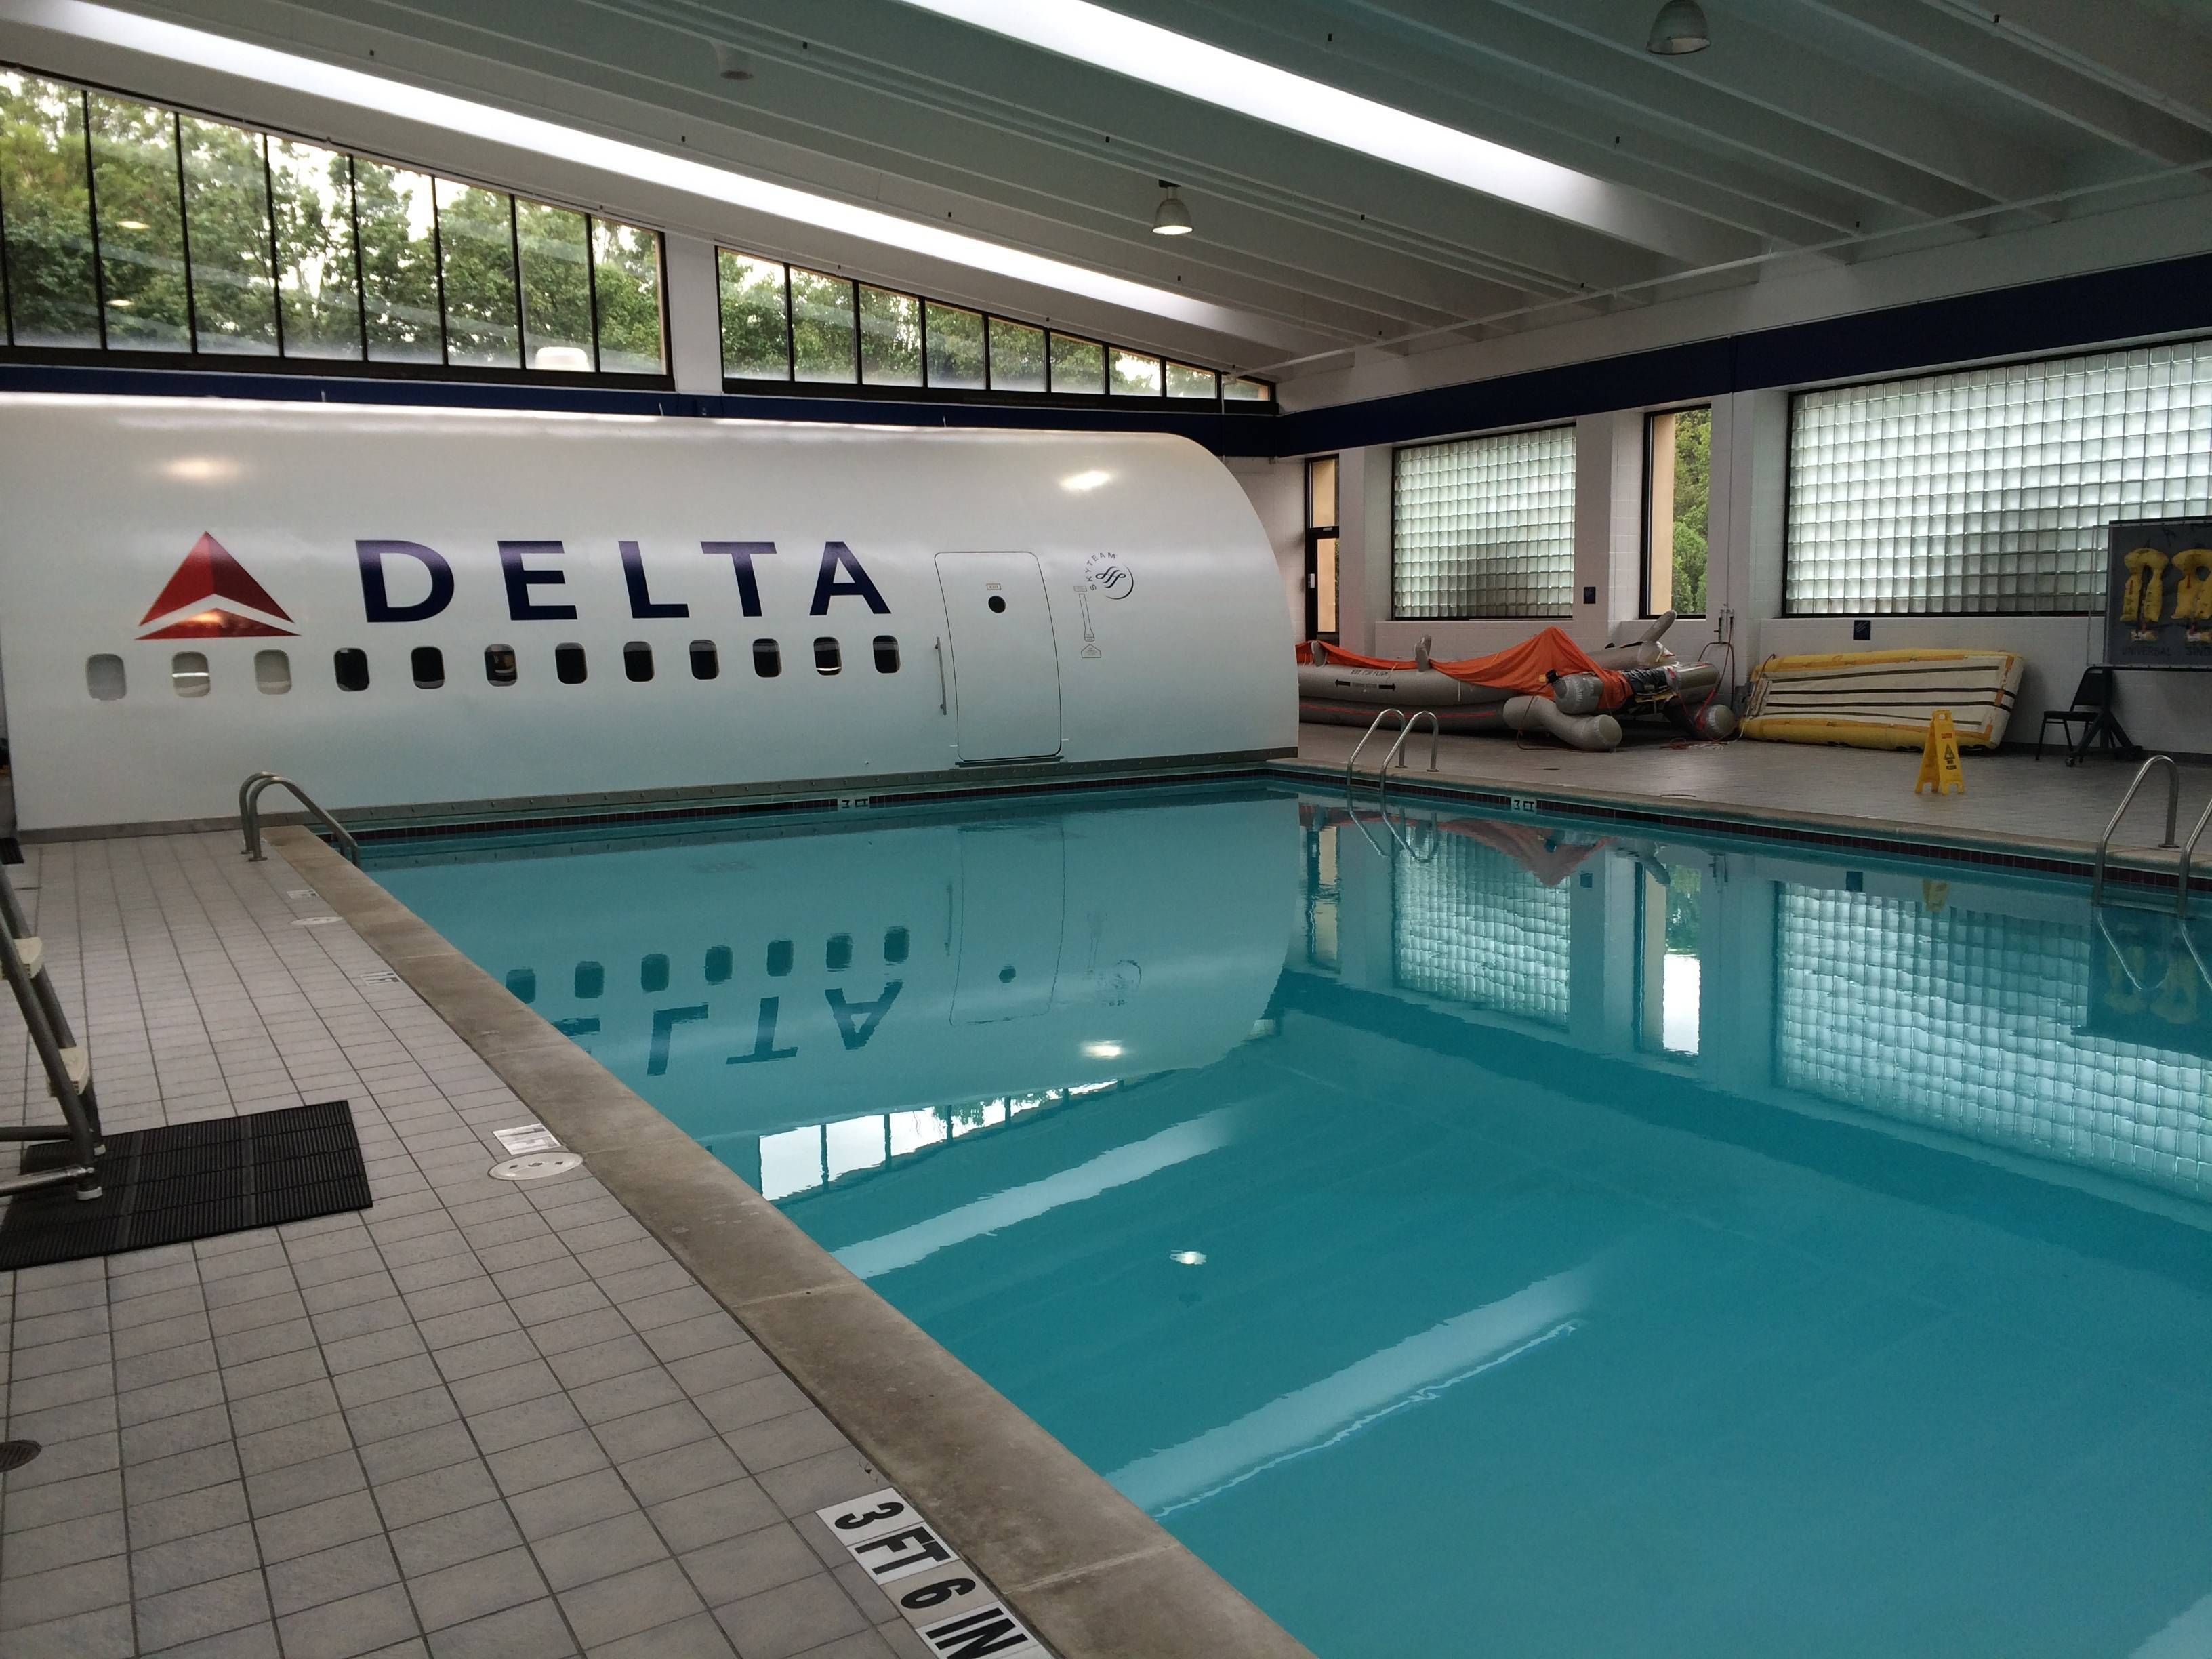 Inside Delta headquarters - passageirodeprimeira